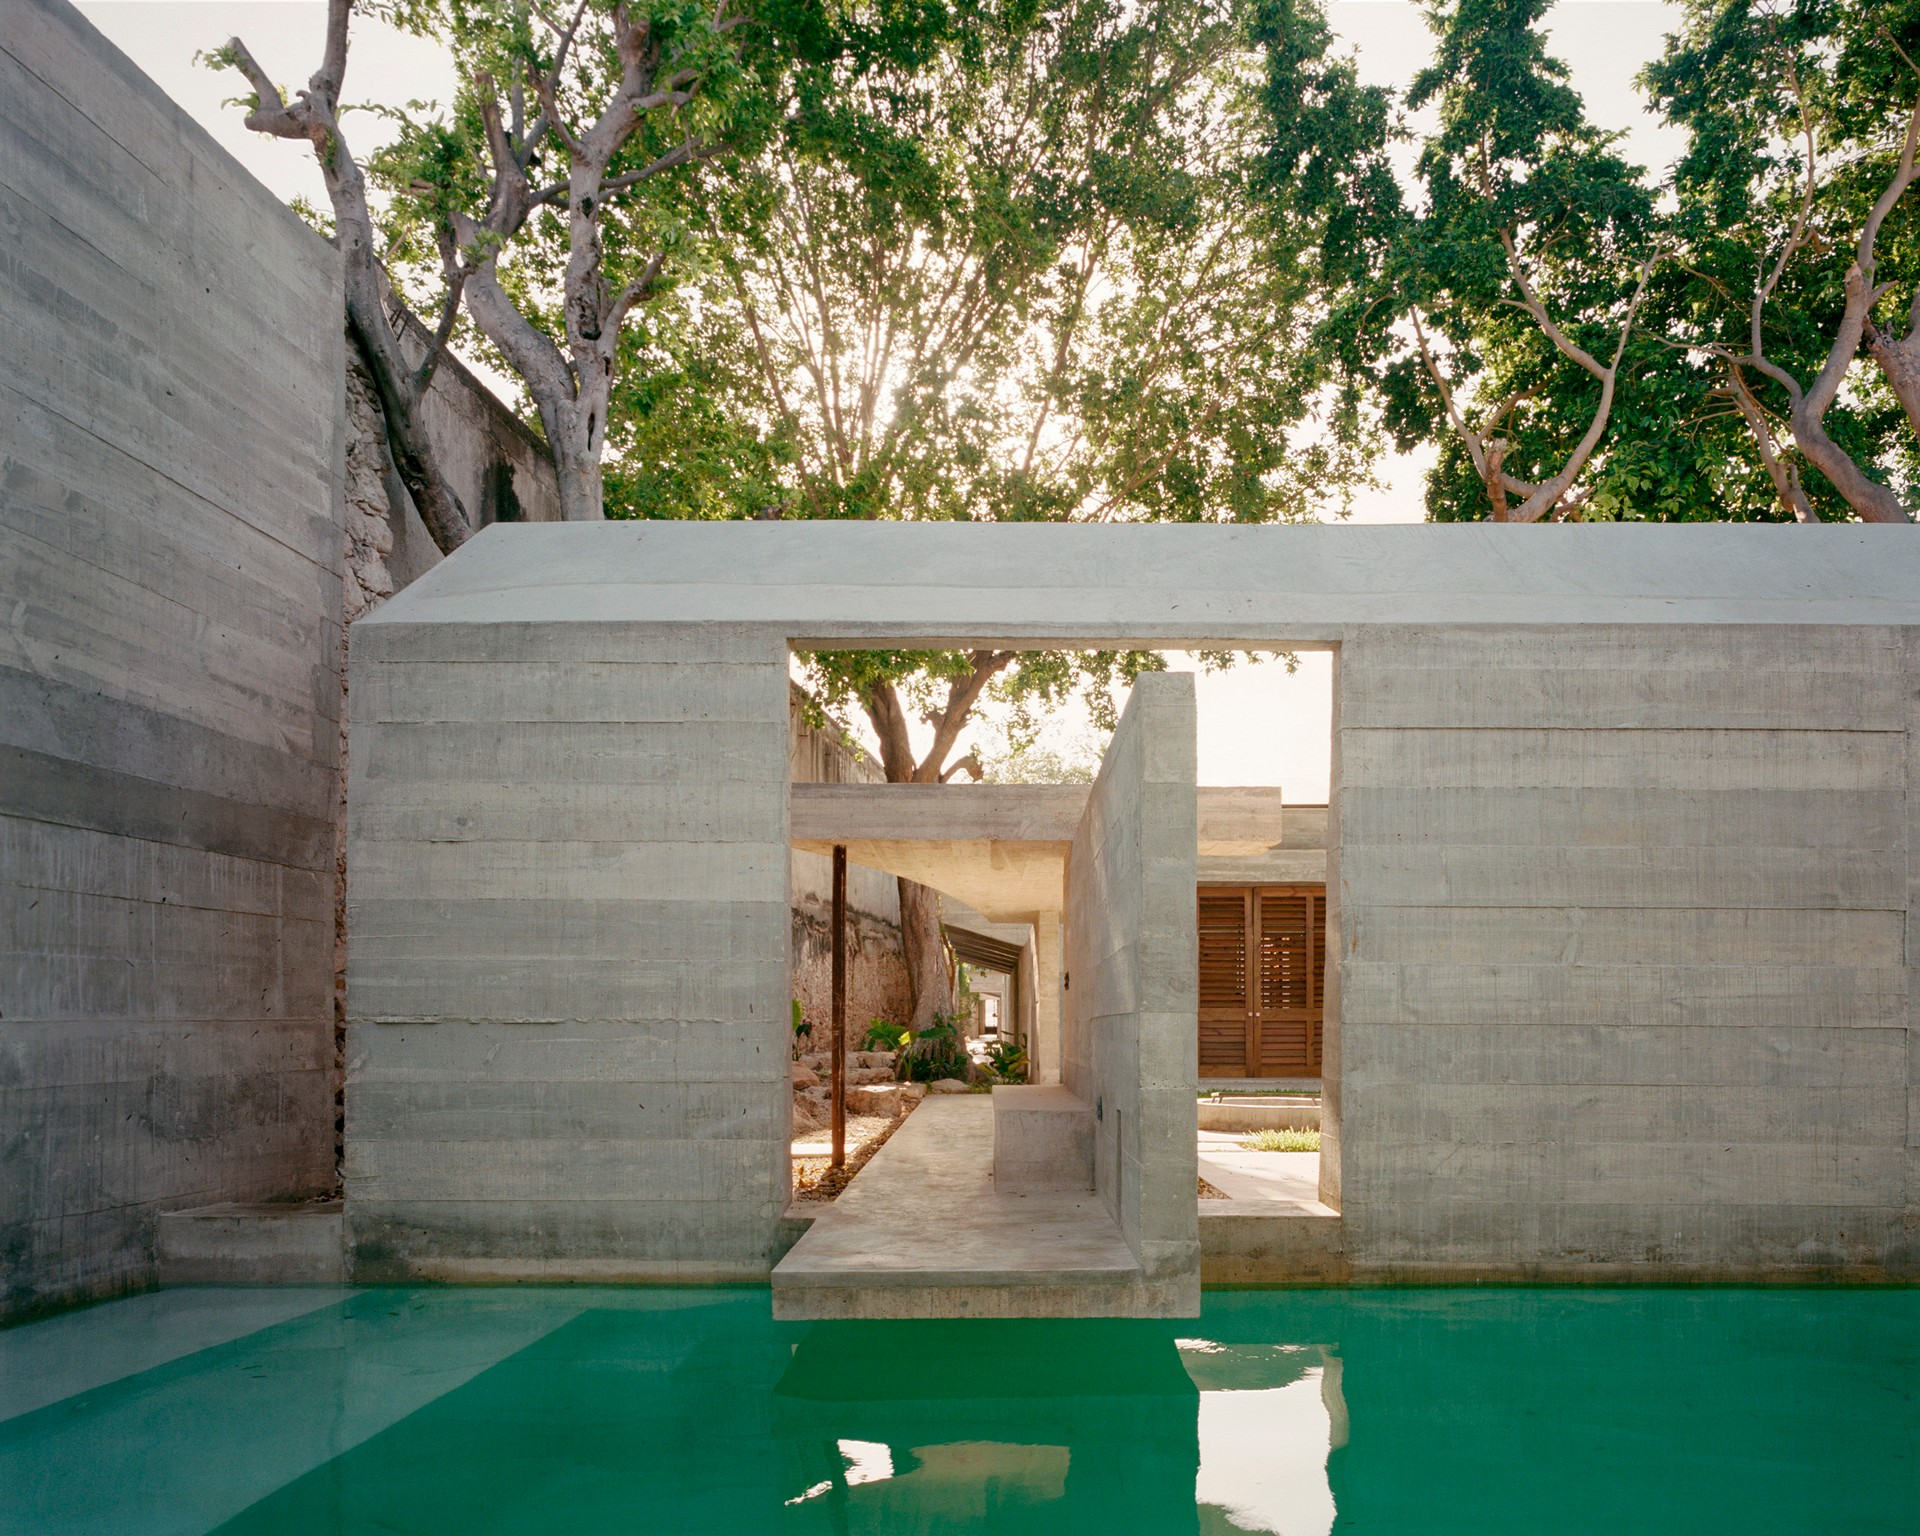 Ludwig Godefroy Architecture: Casa Mérida en Yucatán
